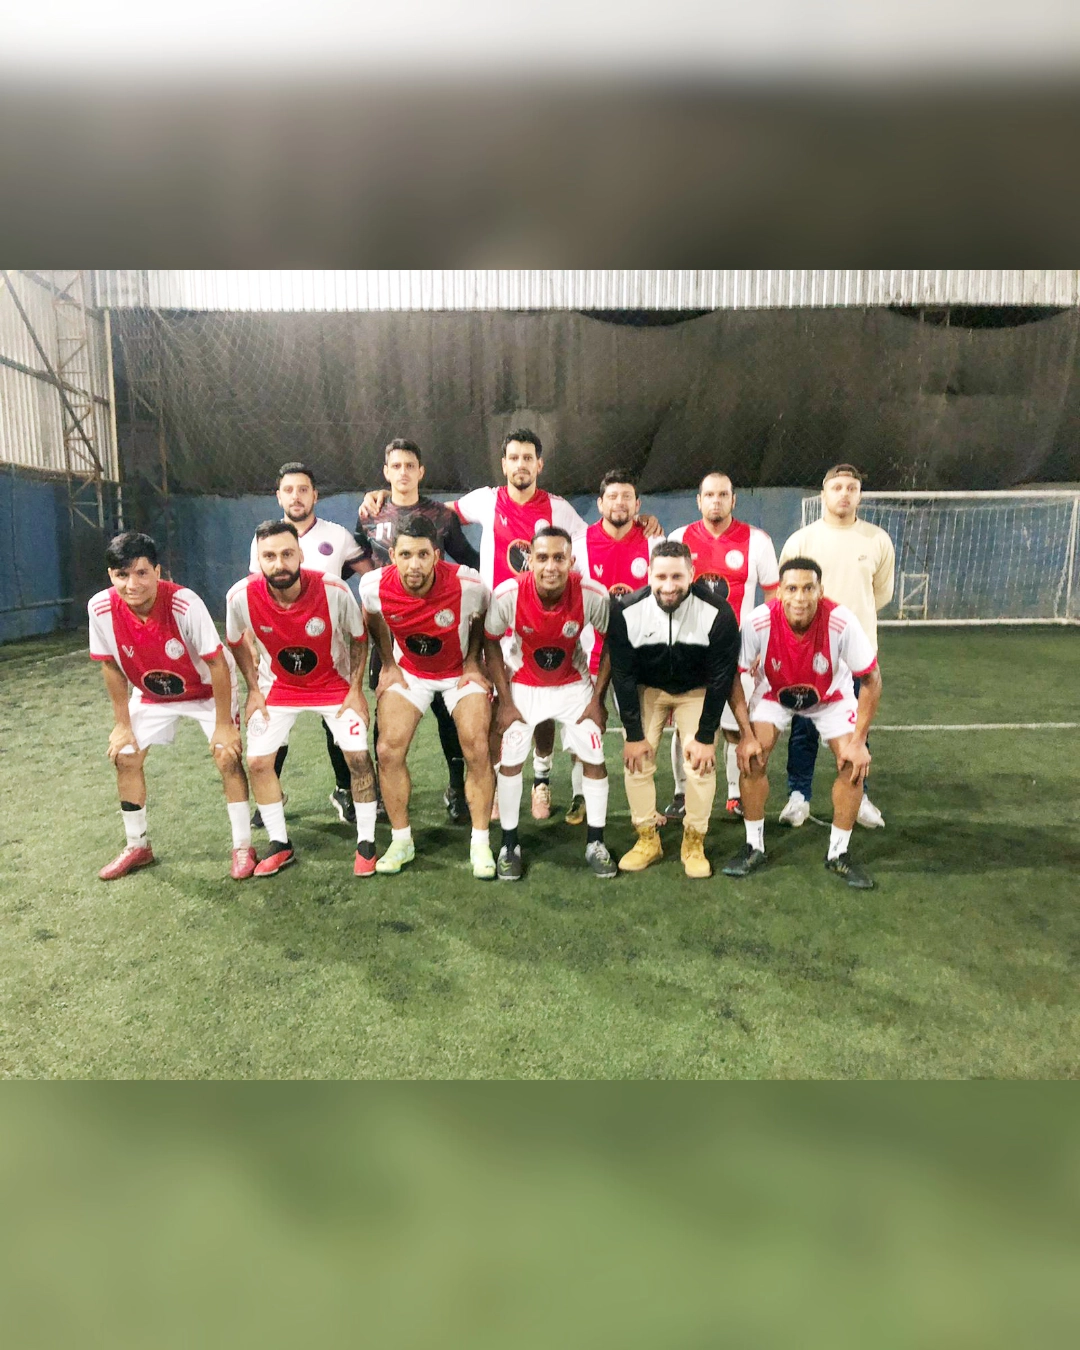 Ajax Araucária Fut7 busca patrocinadores para participar de campeonato